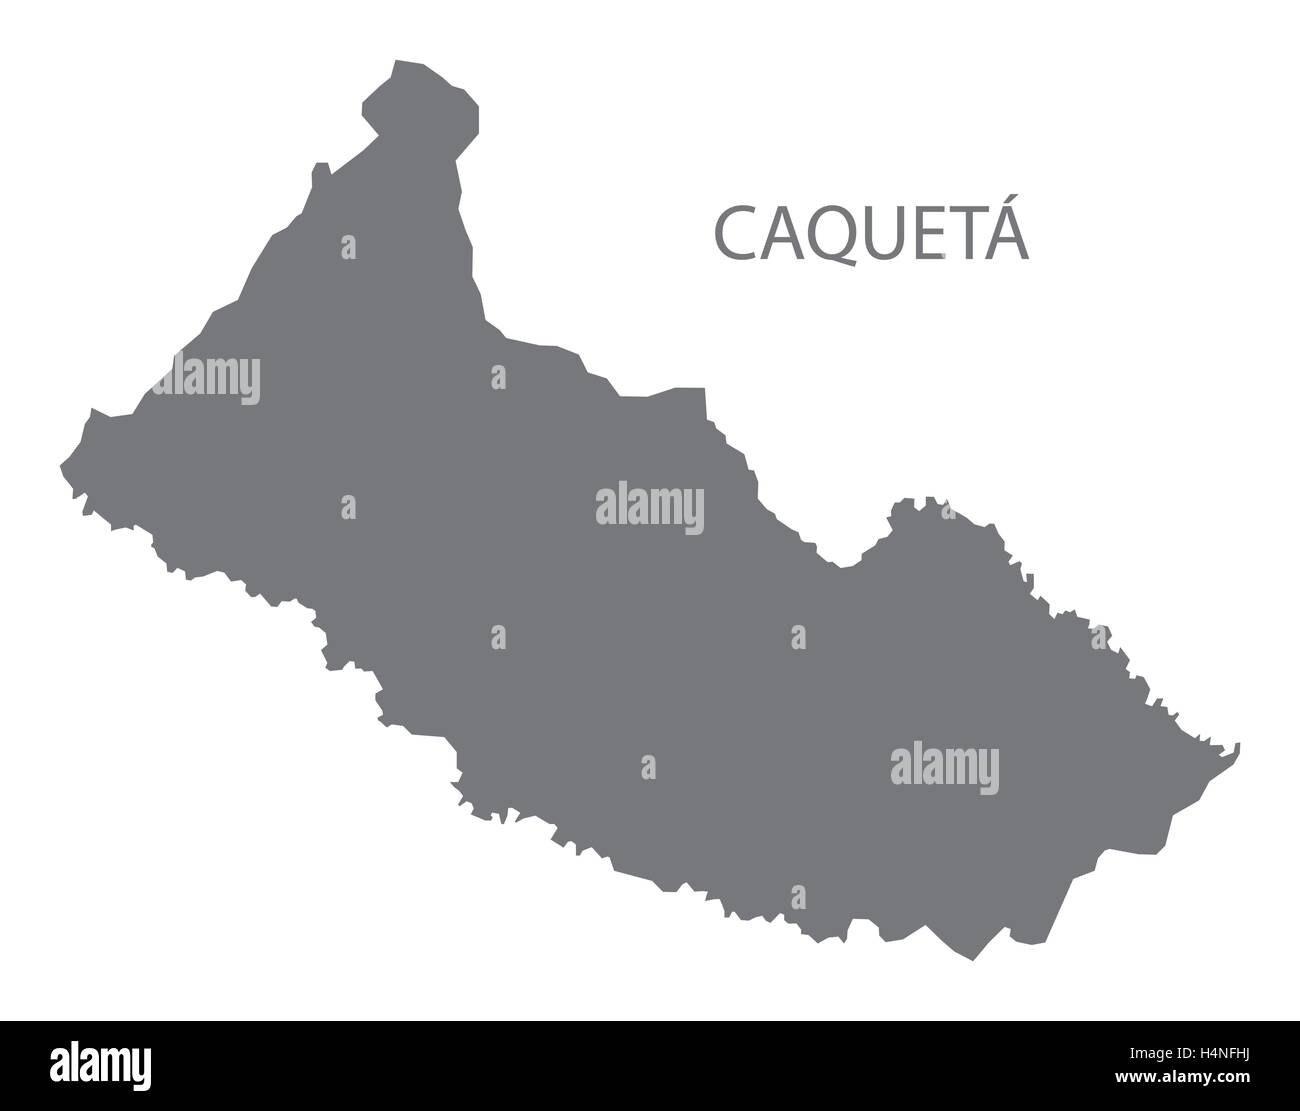 Caqueta Colombia Map in grey Stock Vector